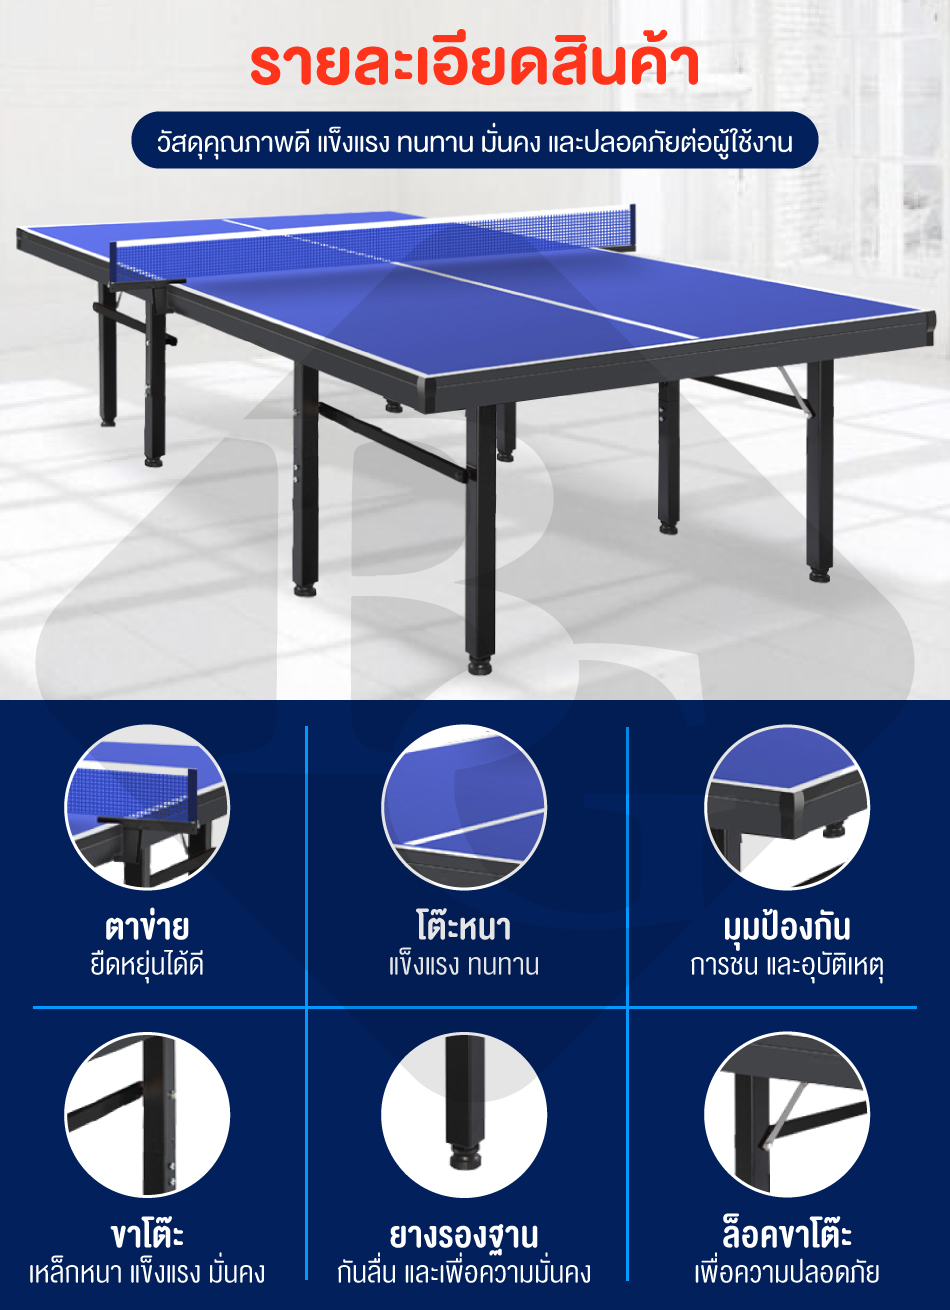 มุมมองเพิ่มเติมเกี่ยวกับ B&G โต๊ะปิงปองมาตรฐานแข่งขัน โต๊ะปิงปอง ออกกำลังกายในร่ม สามารถพับเก็บได้ โครงเหล็กแข็งแรง Table 12.24 mm HDF Table Tennis รุ่น 5007